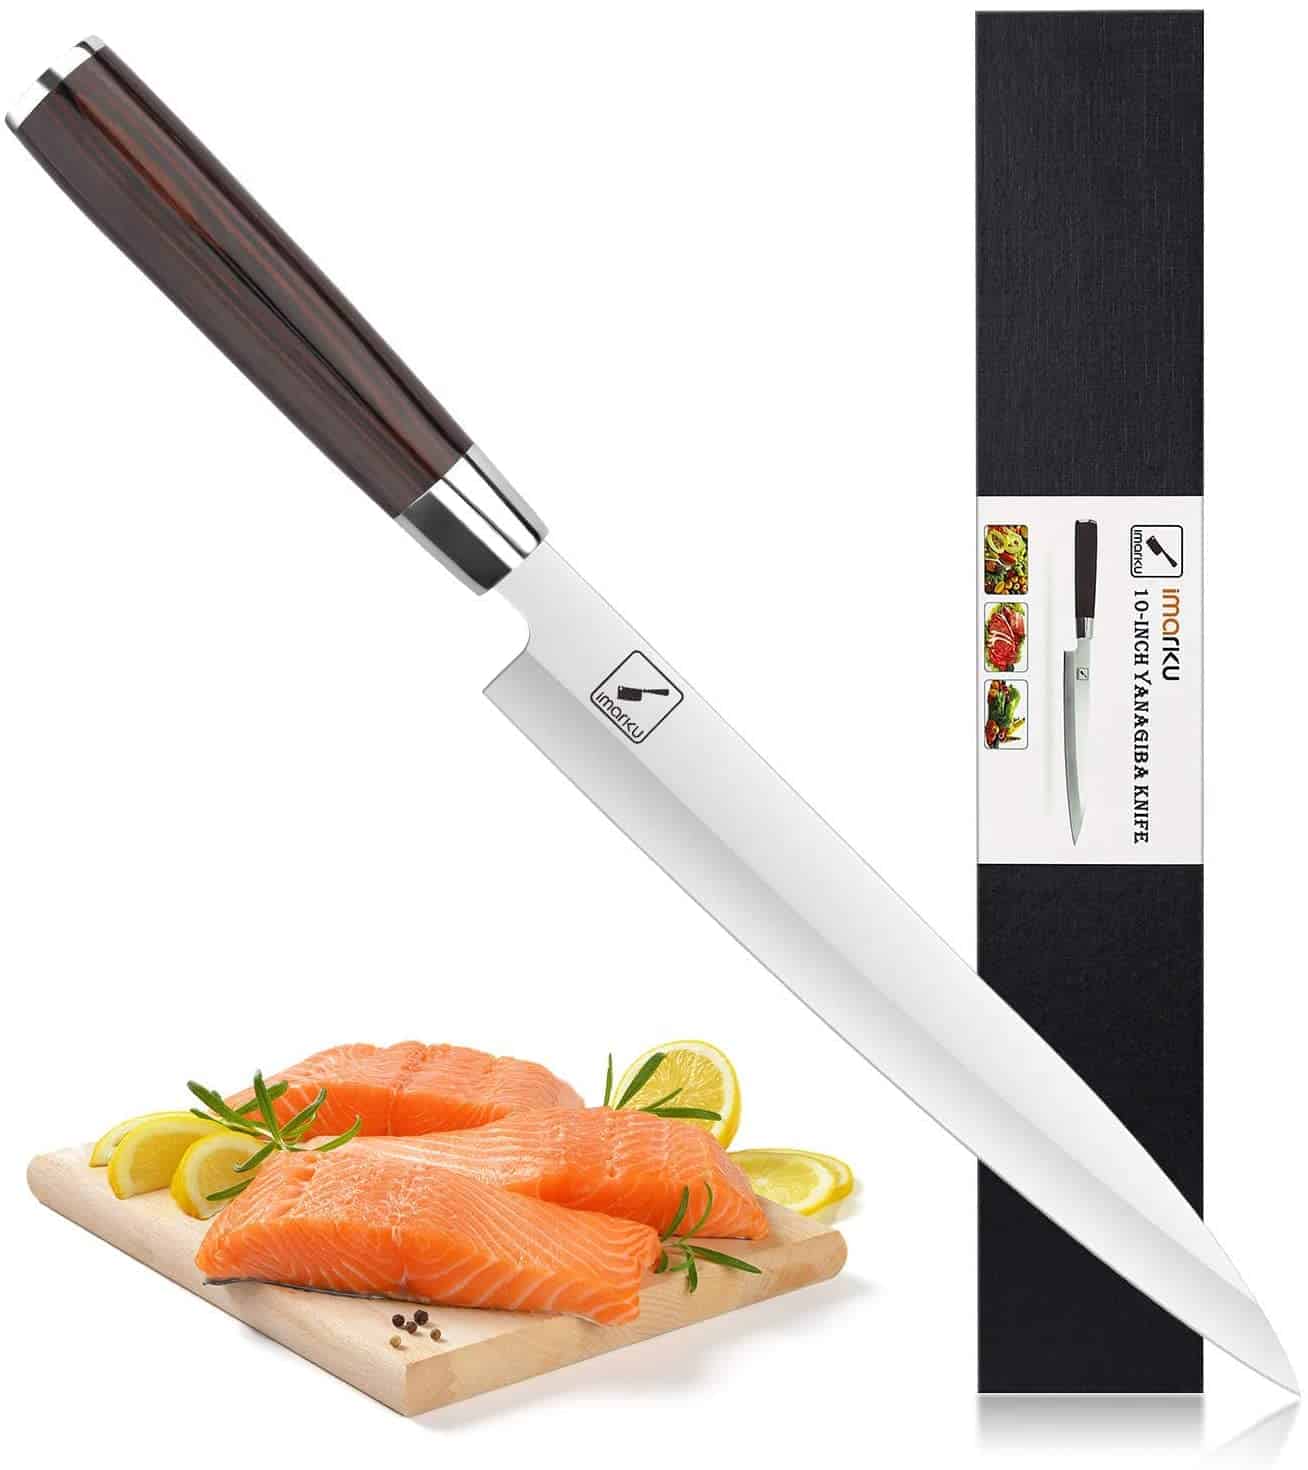 มีด yanagiba โดยรวมที่ดีที่สุด - Imarku Professional Single Bevel Sushi Knife